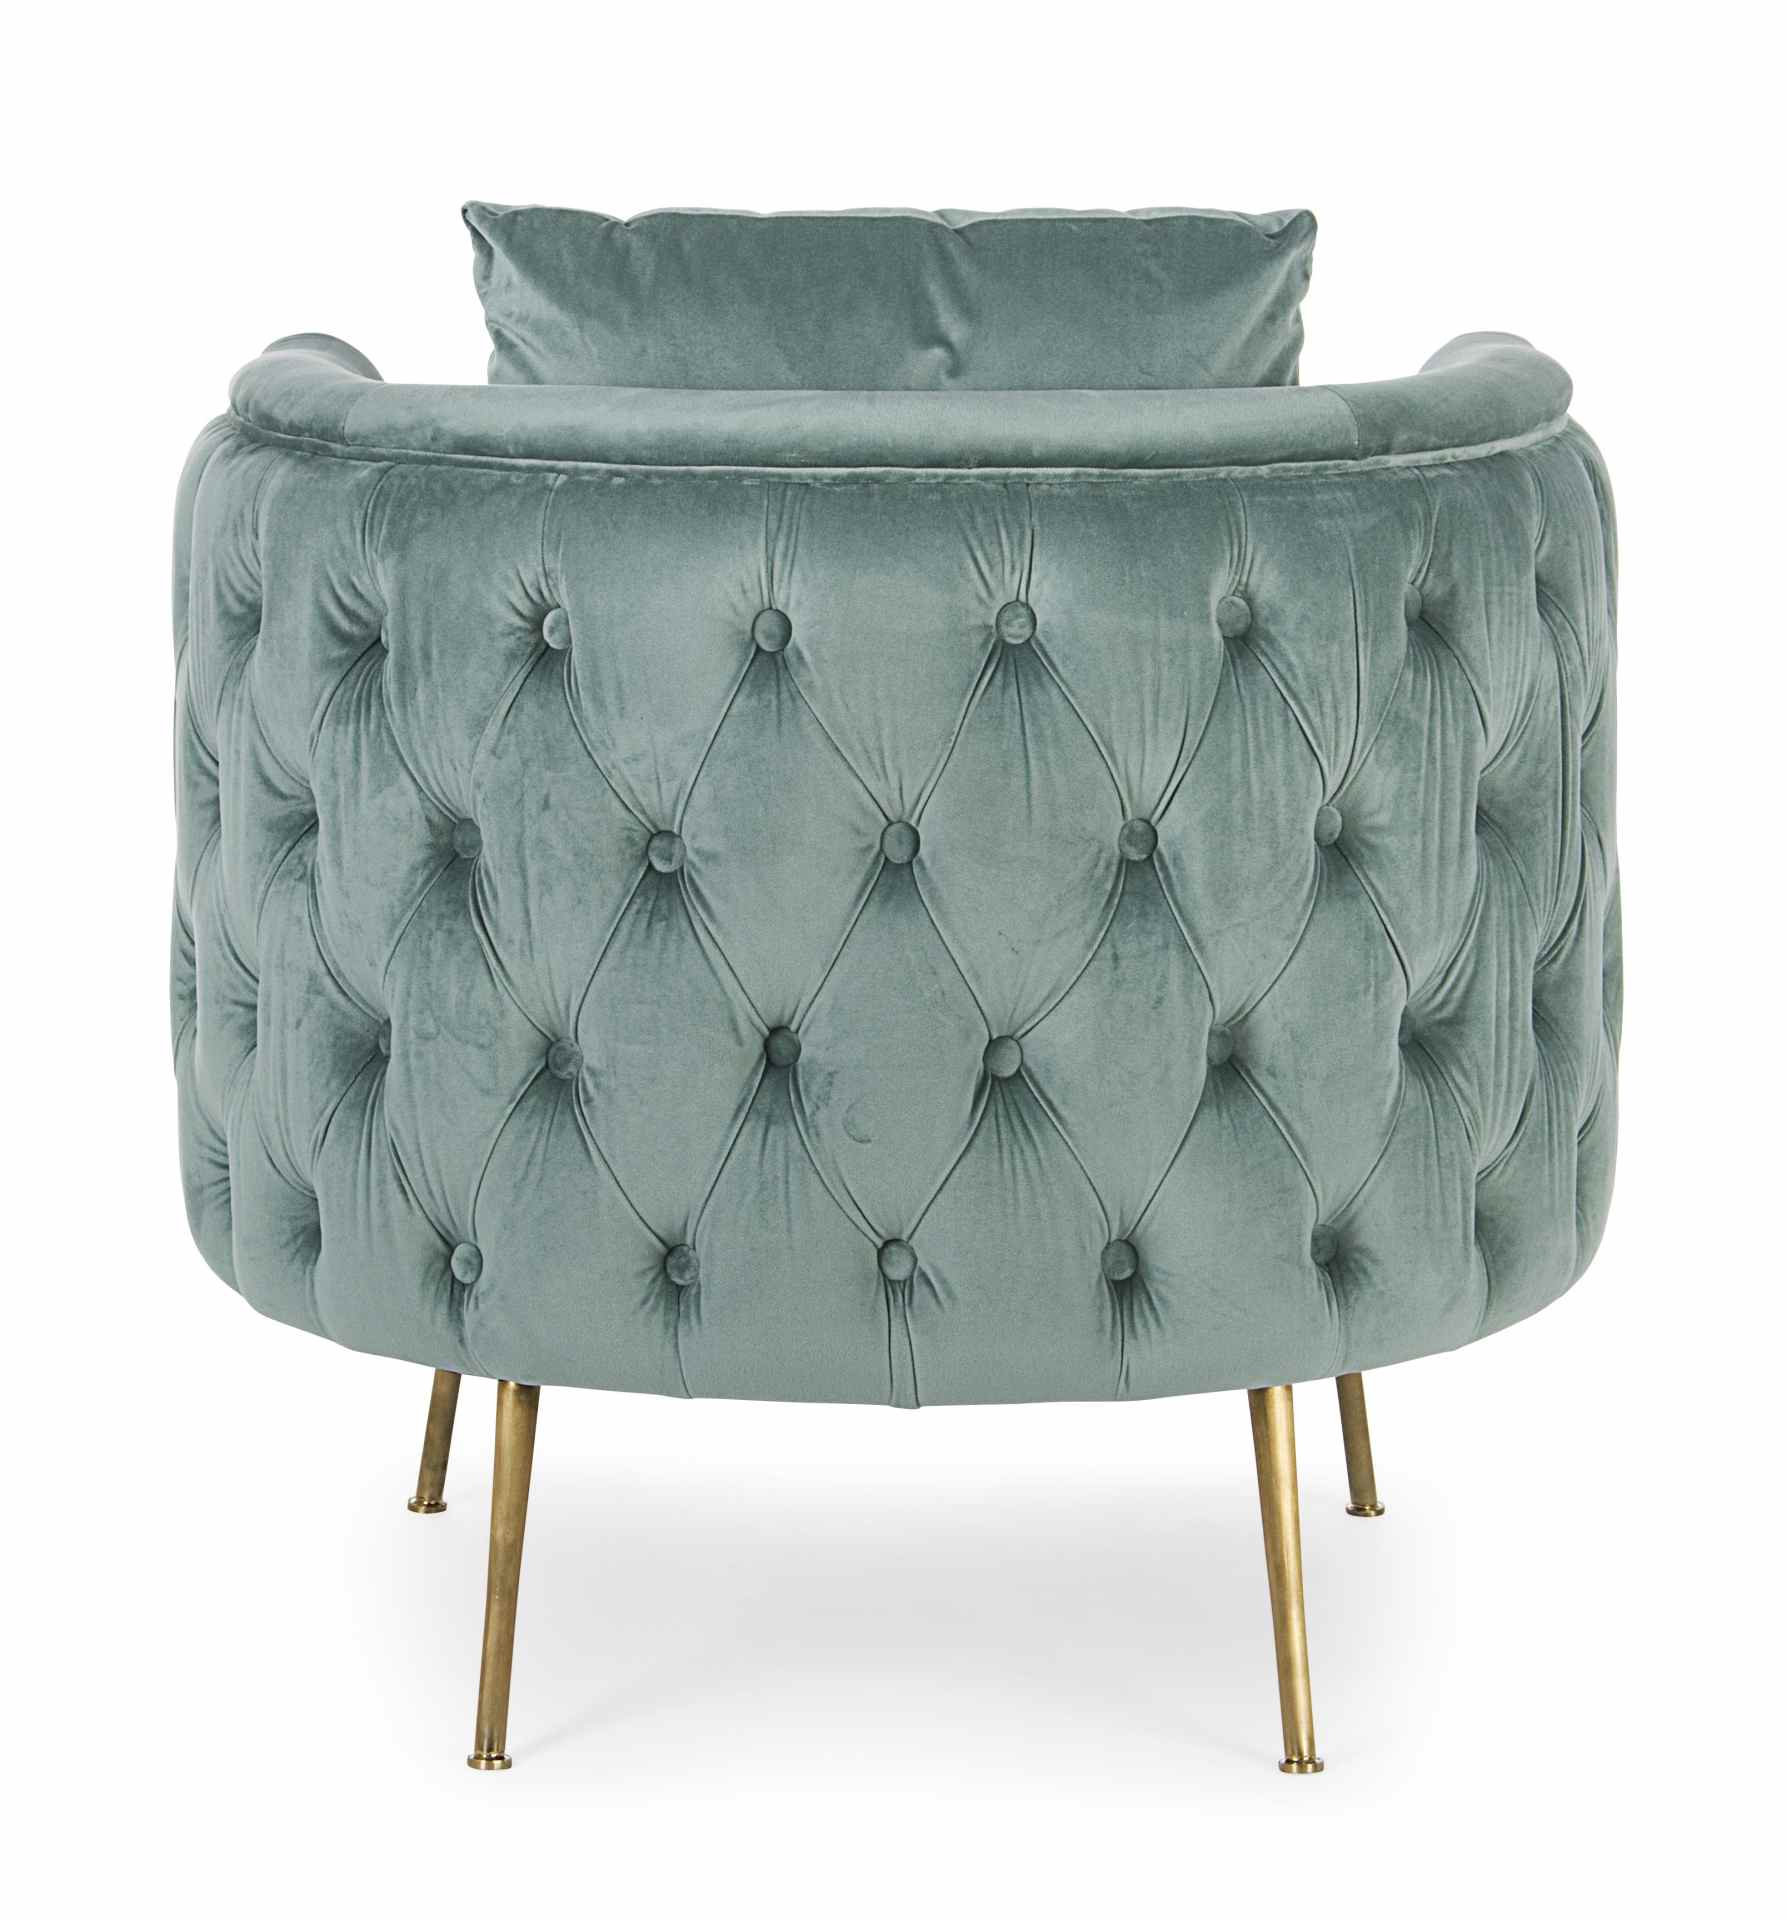 Der Sessel Tenbury überzeugt mit seinem modernen Design. Gefertigt wurde er aus Stoff in Samt-Optik, welcher einen türkis Farbton besitzt. Das Gestell ist aus Metall und hat eine goldene Farbe. Der Sessel besitzt eine Sitzhöhe von 42 cm. Die Breite beträg